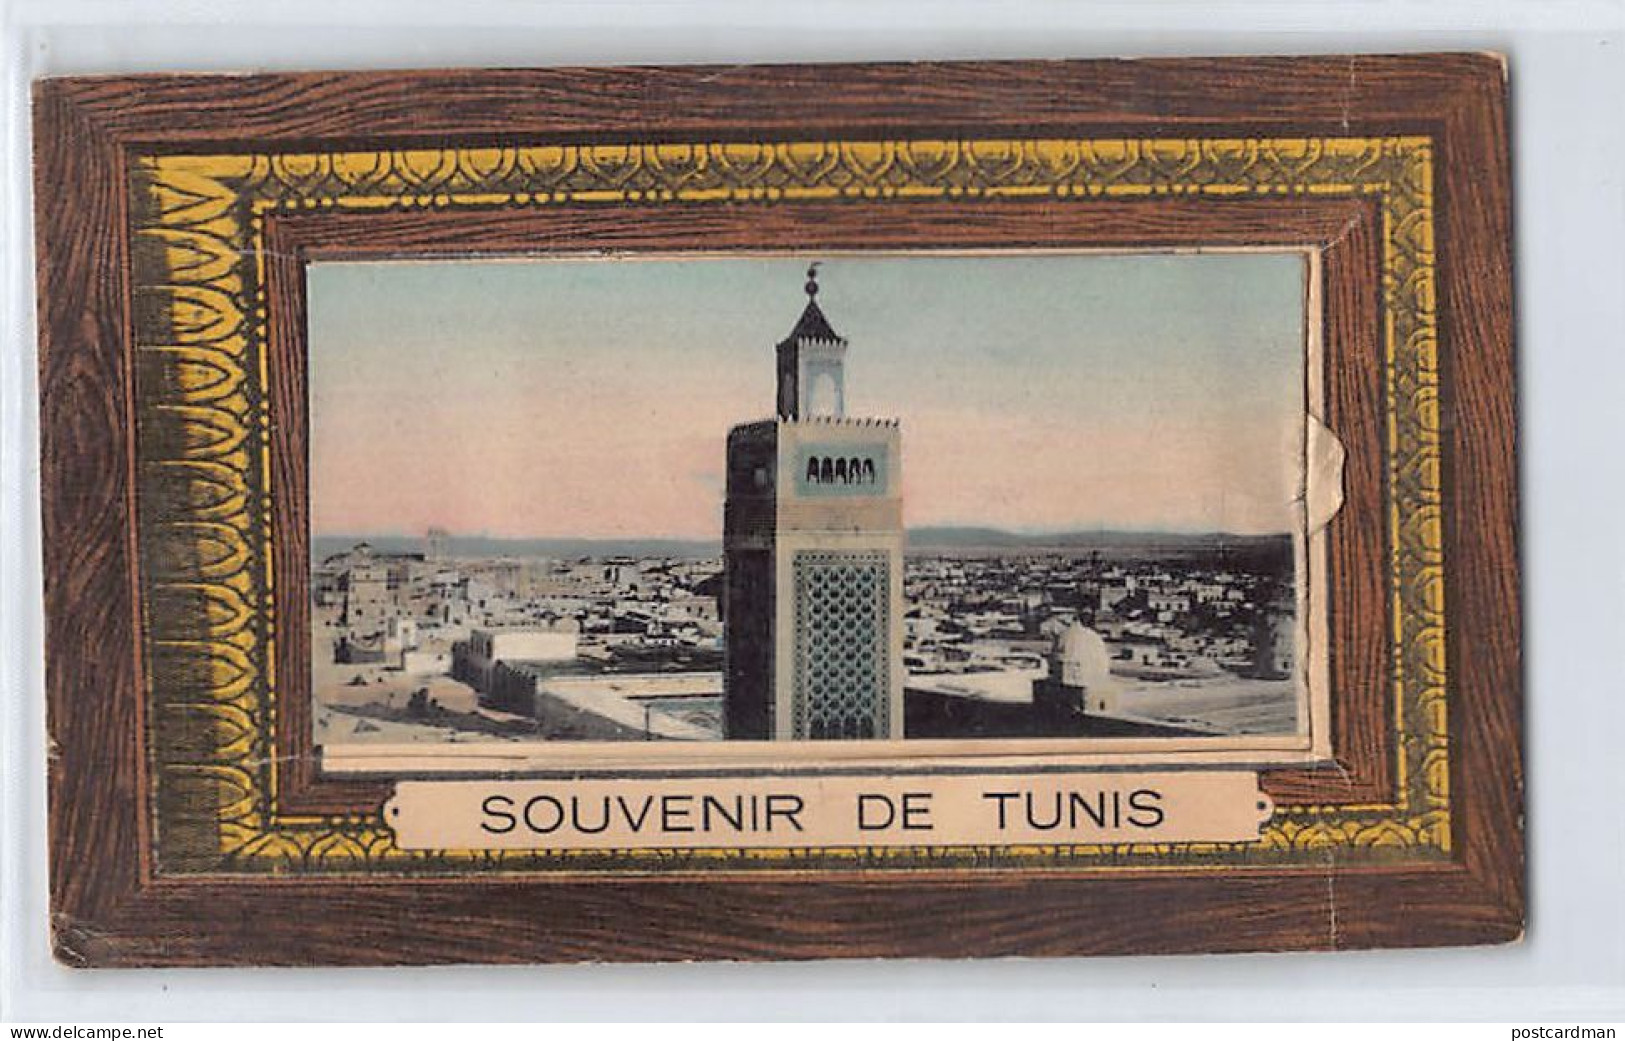 Souvenir de TUNIS - Carte avec dépliant complet - Ed. DD 15